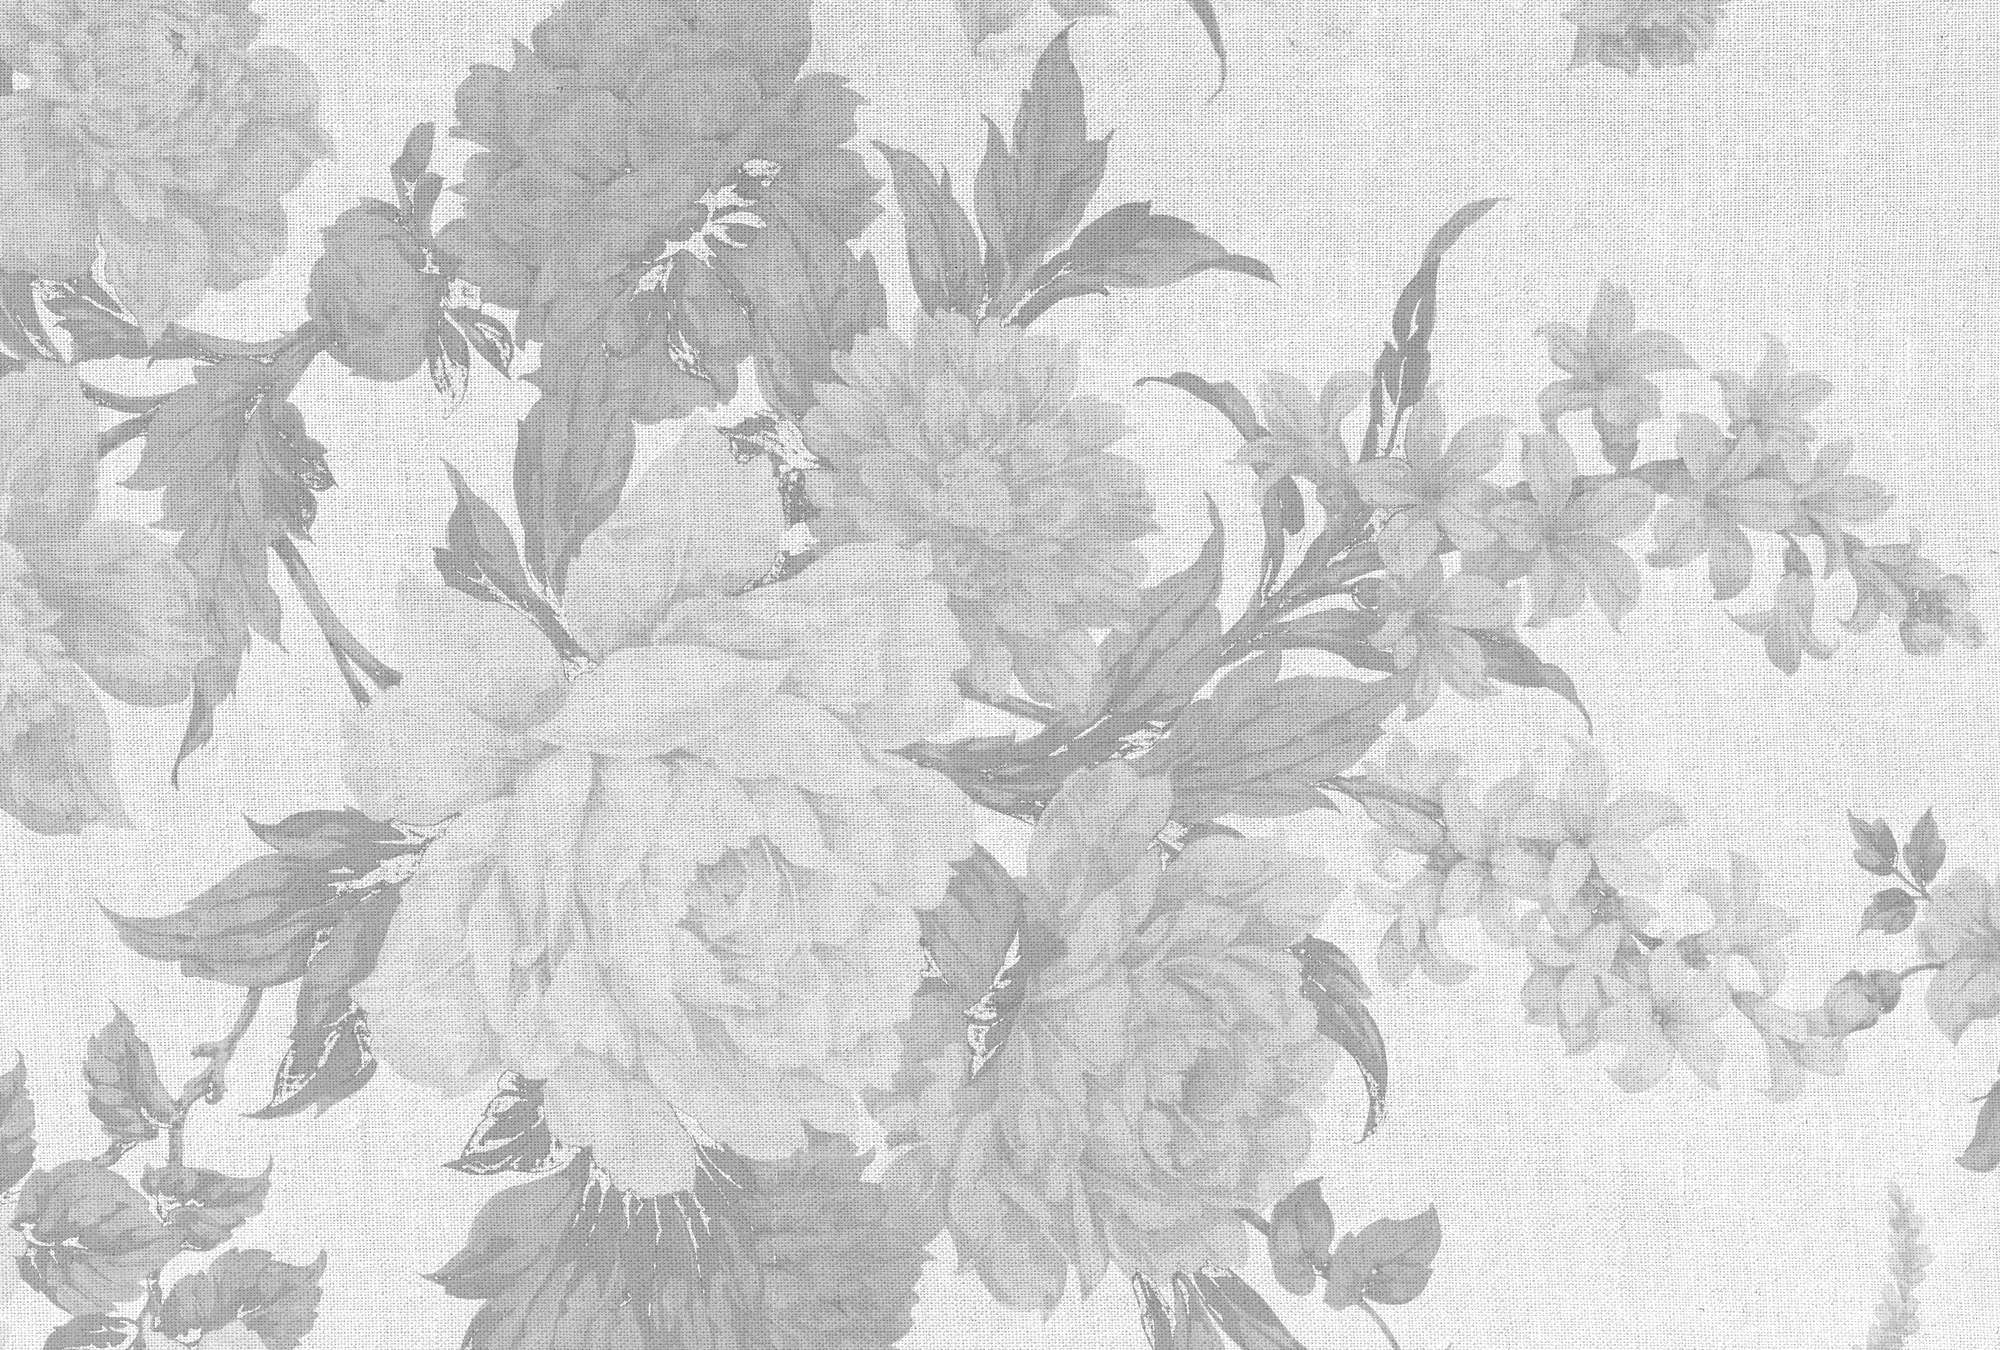             Muurschildering met rozenmotief in textiellook - grijs, wit
        